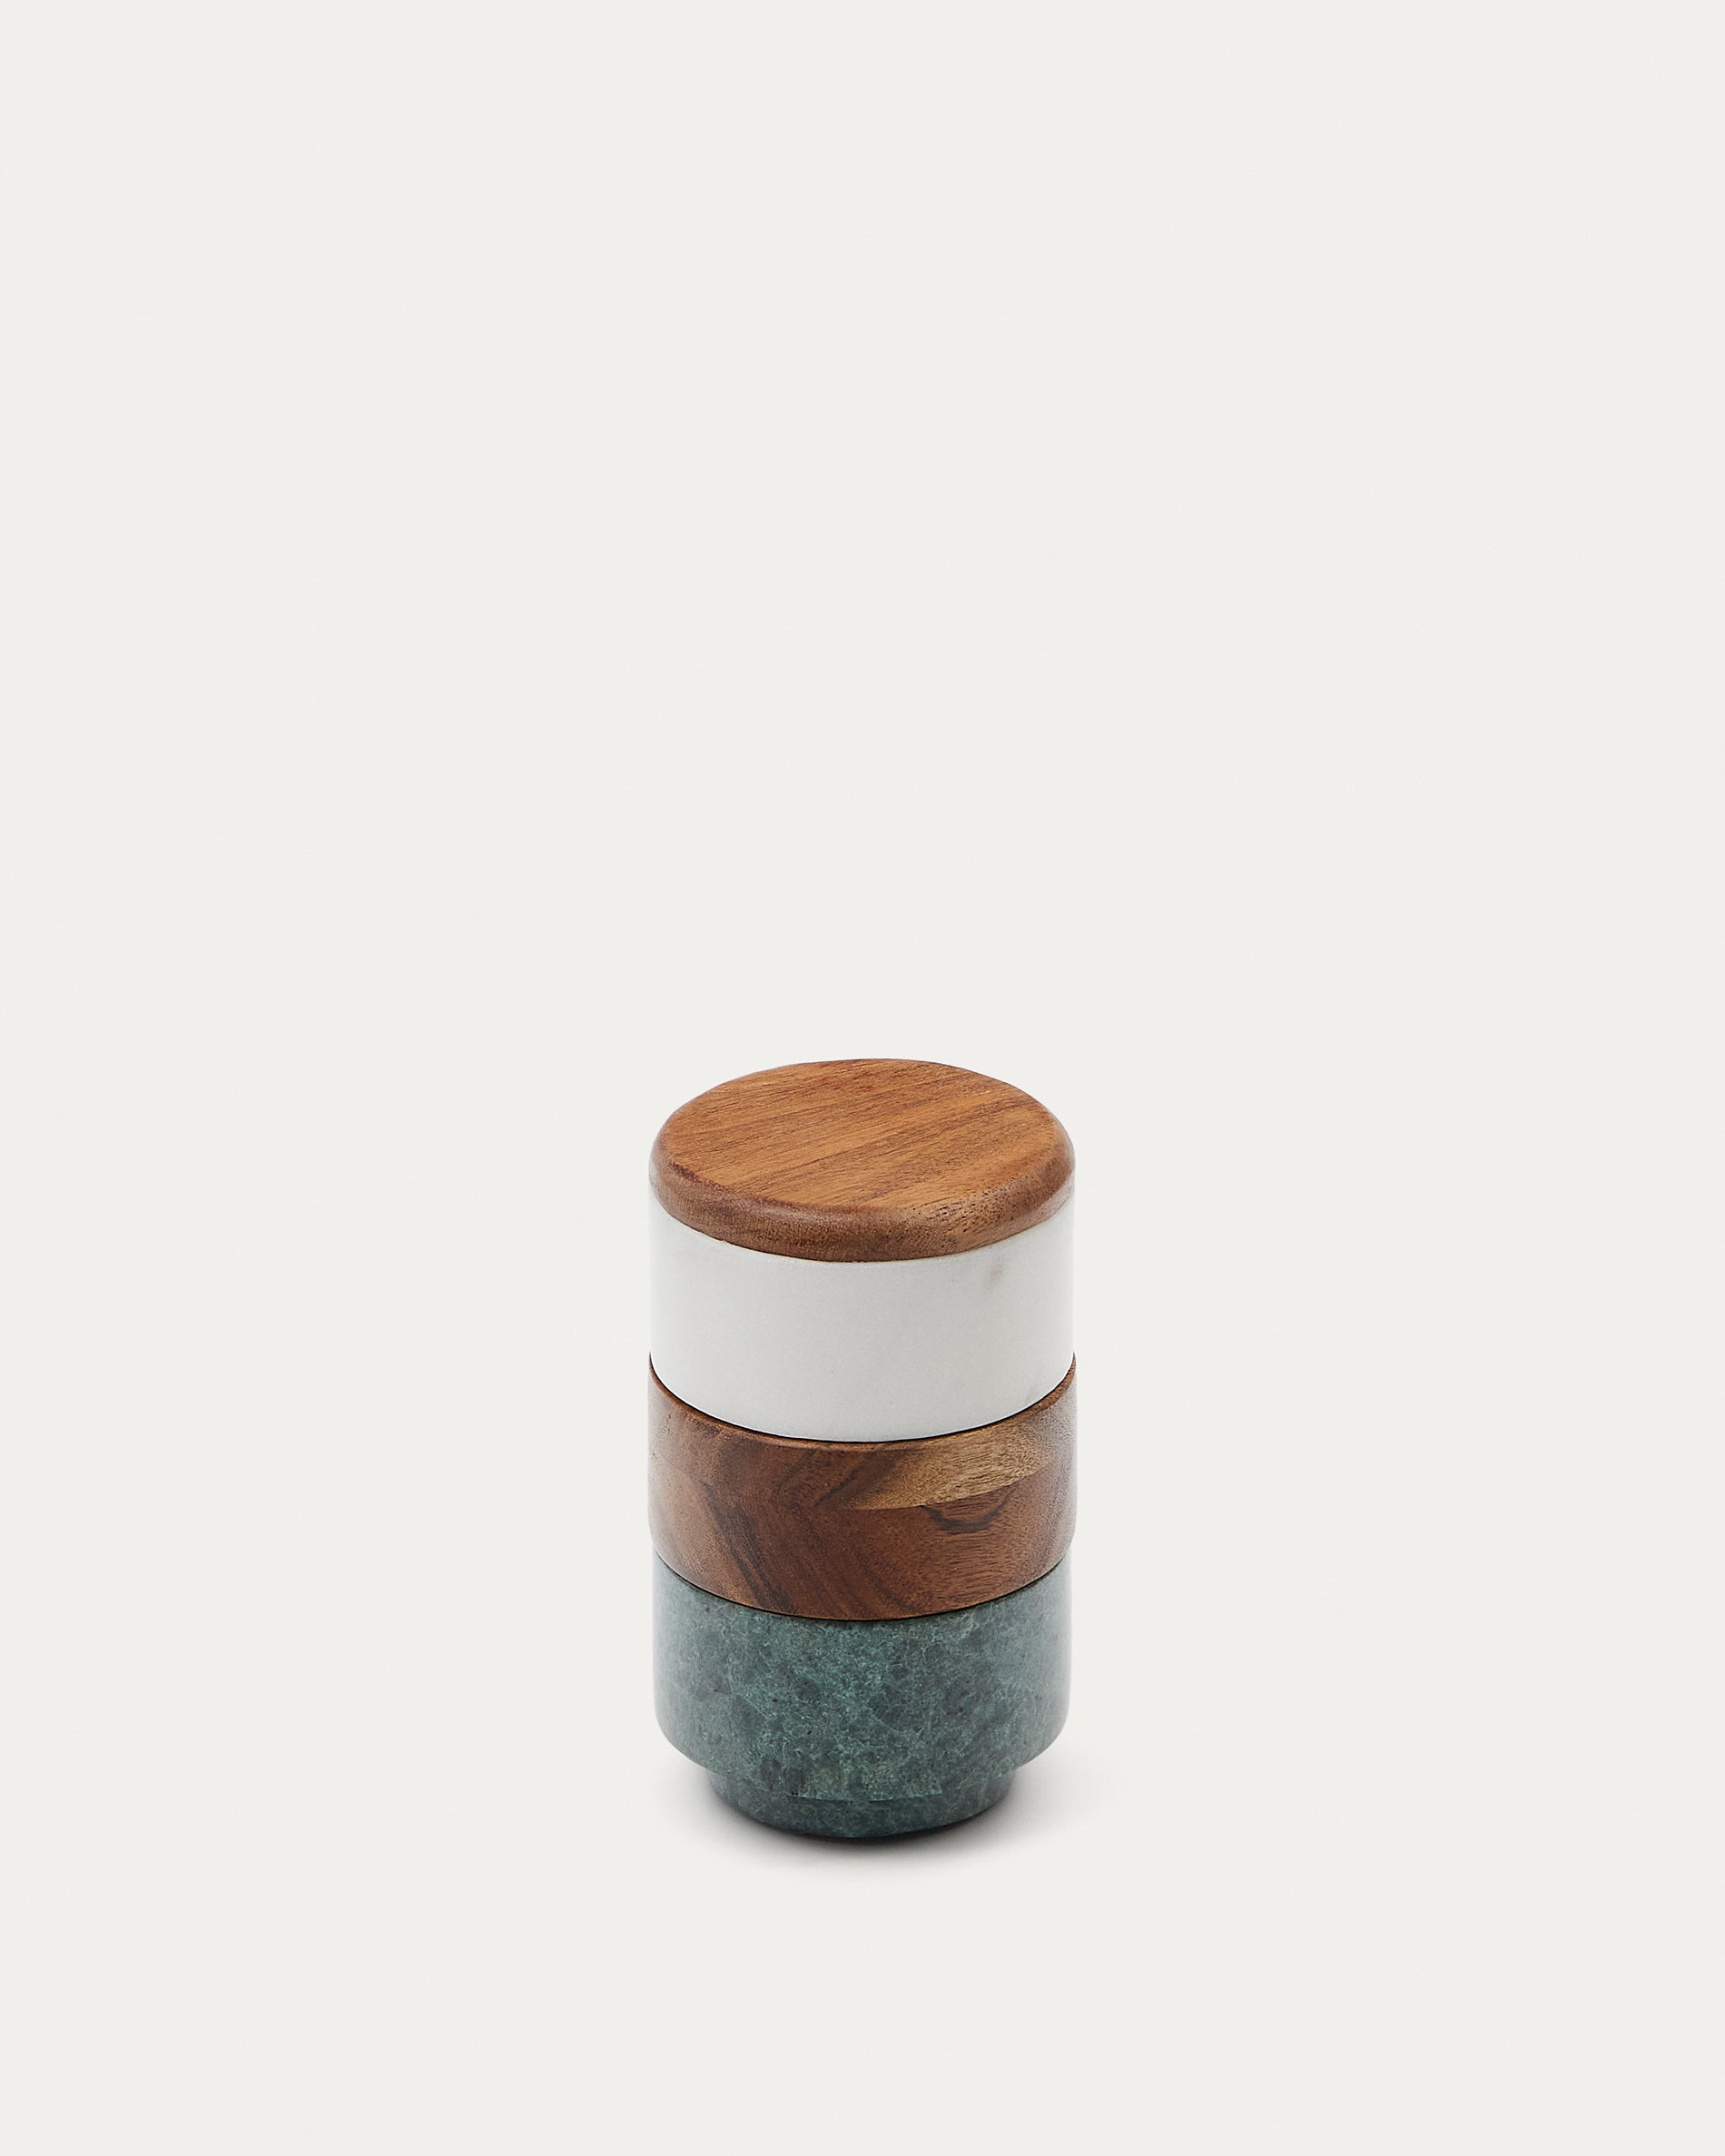 Siris kis többszintes konyhai tartó fa és márványból